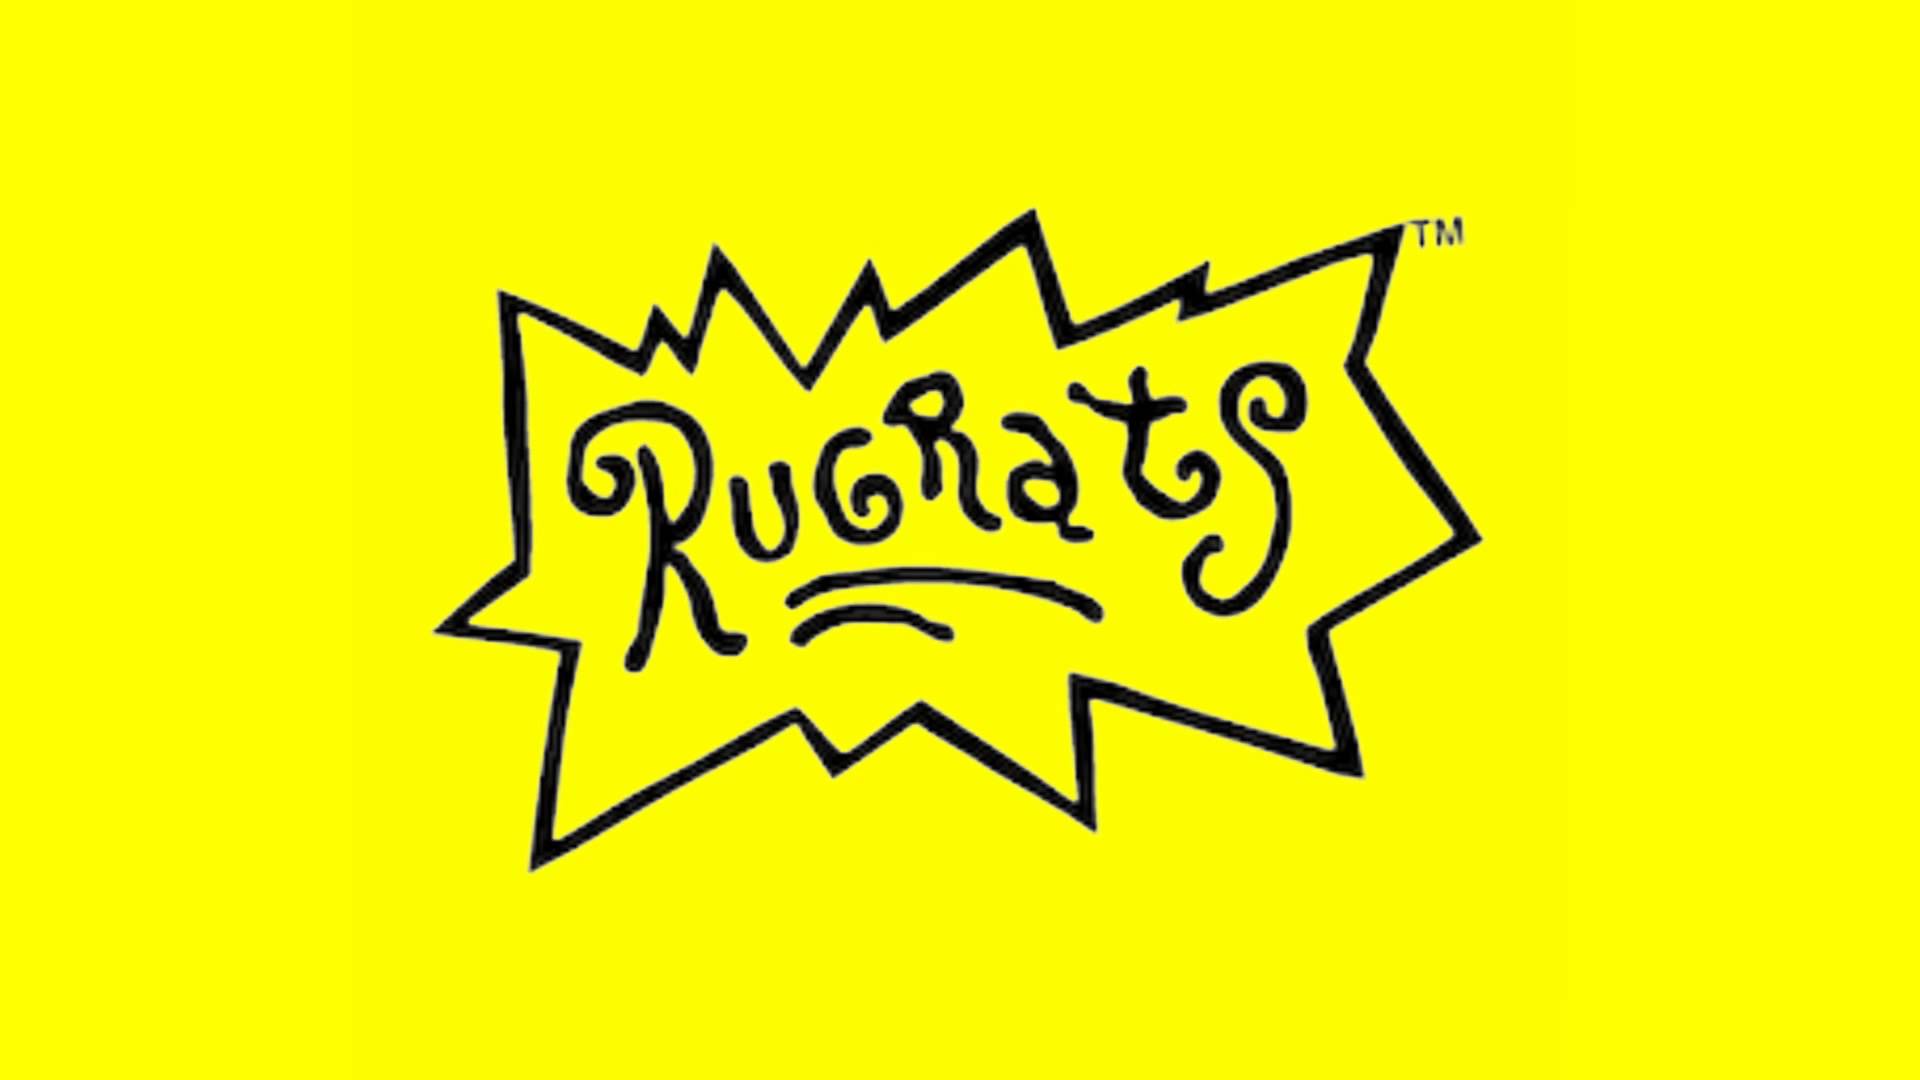 Logo Download For Rugrats Design Rugrats Logo Etsy De - vrogue.co